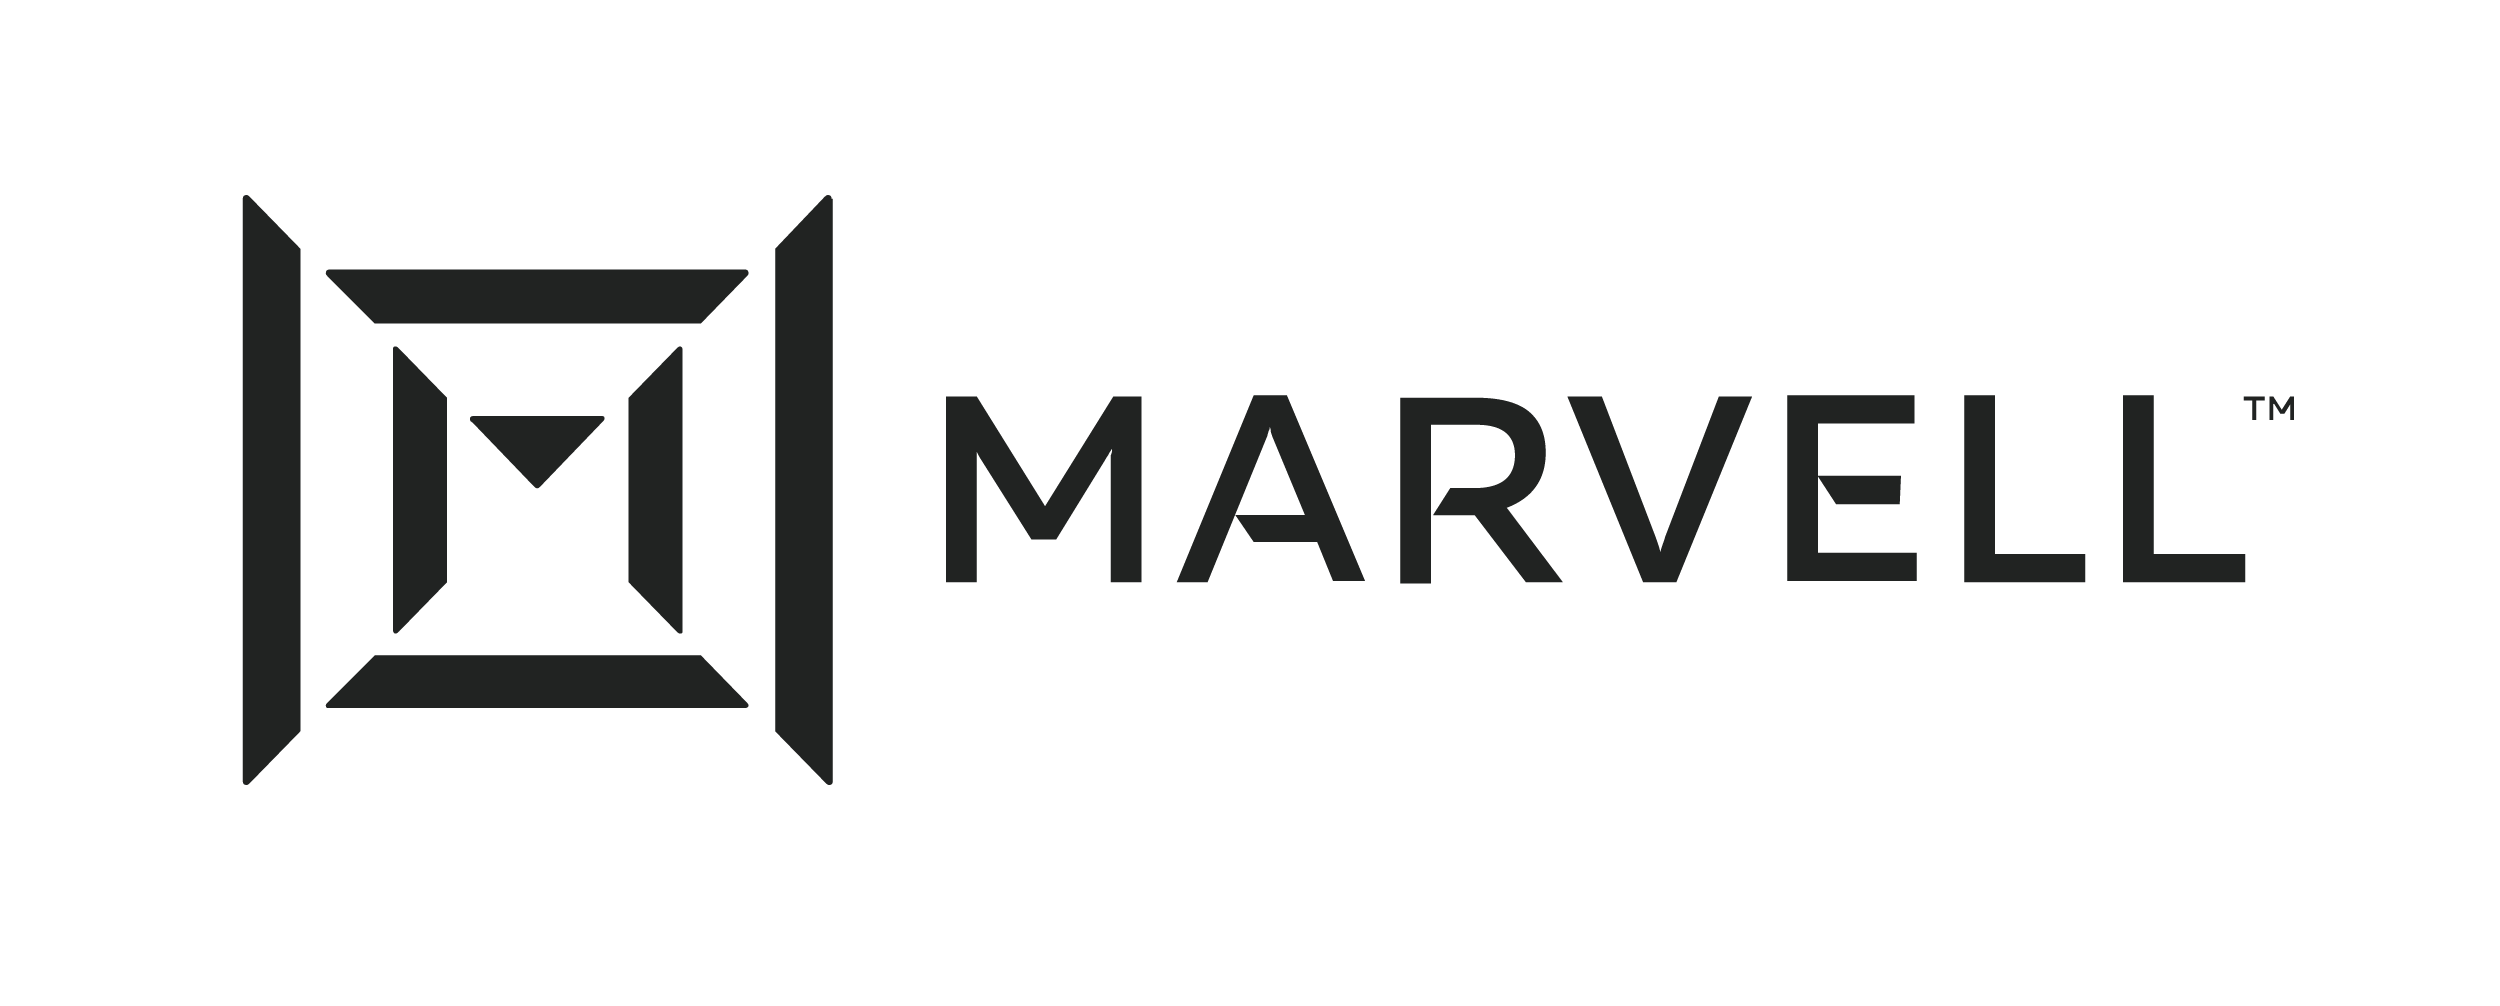 Marvell-logo